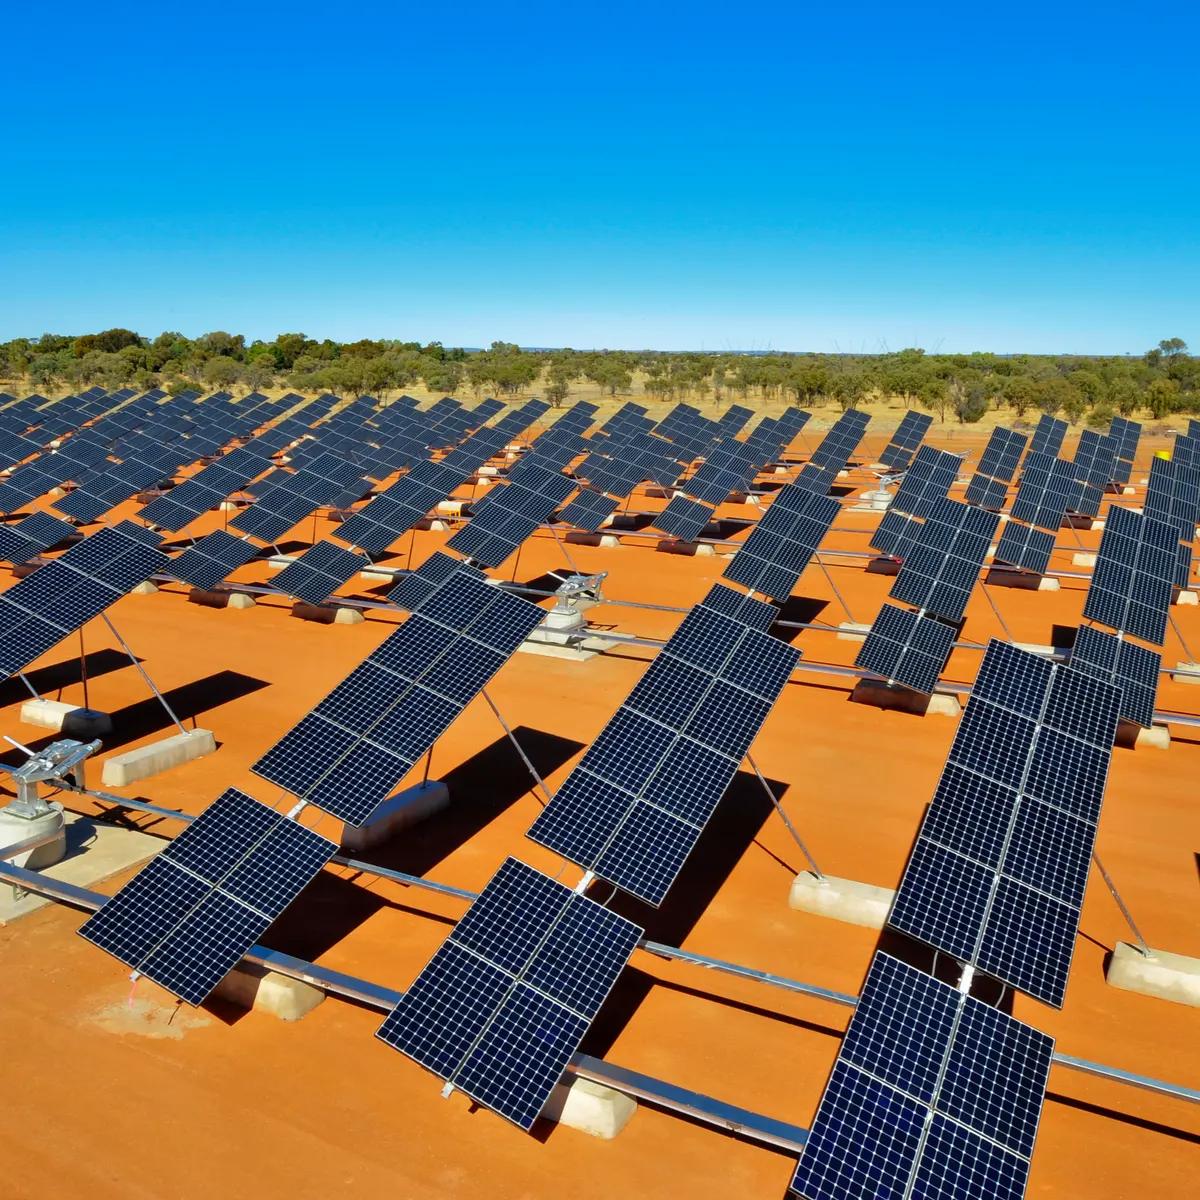 australia solar panel - Is Australia good for solar energy